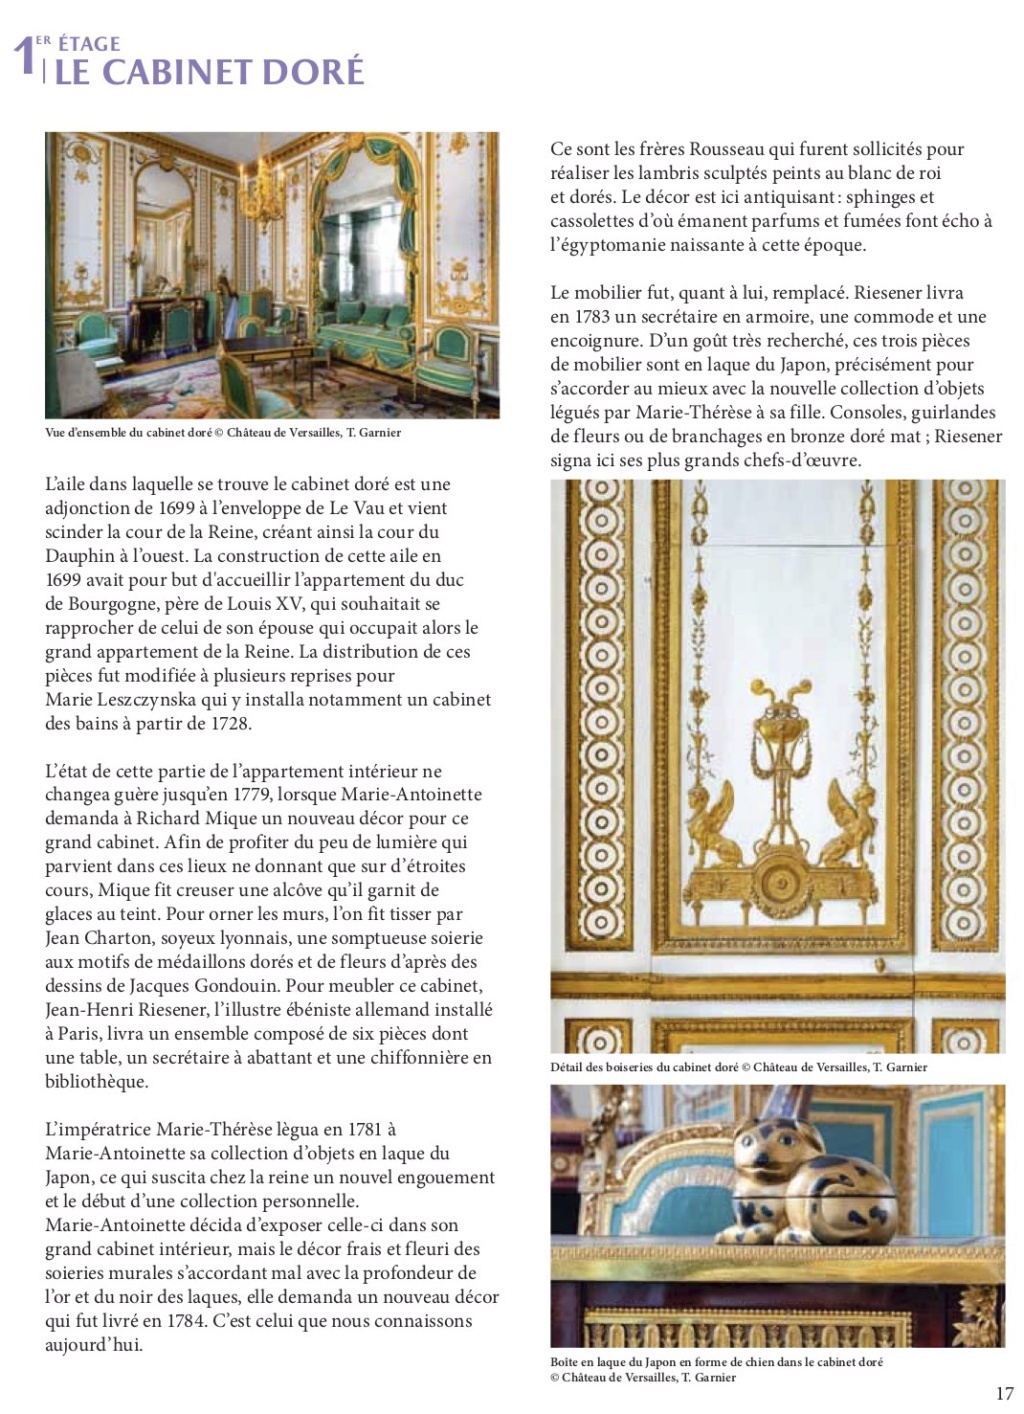 Les cabinets intérieurs de Marie-Antoinette au château de Versailles - Page 3 Dp_cab18